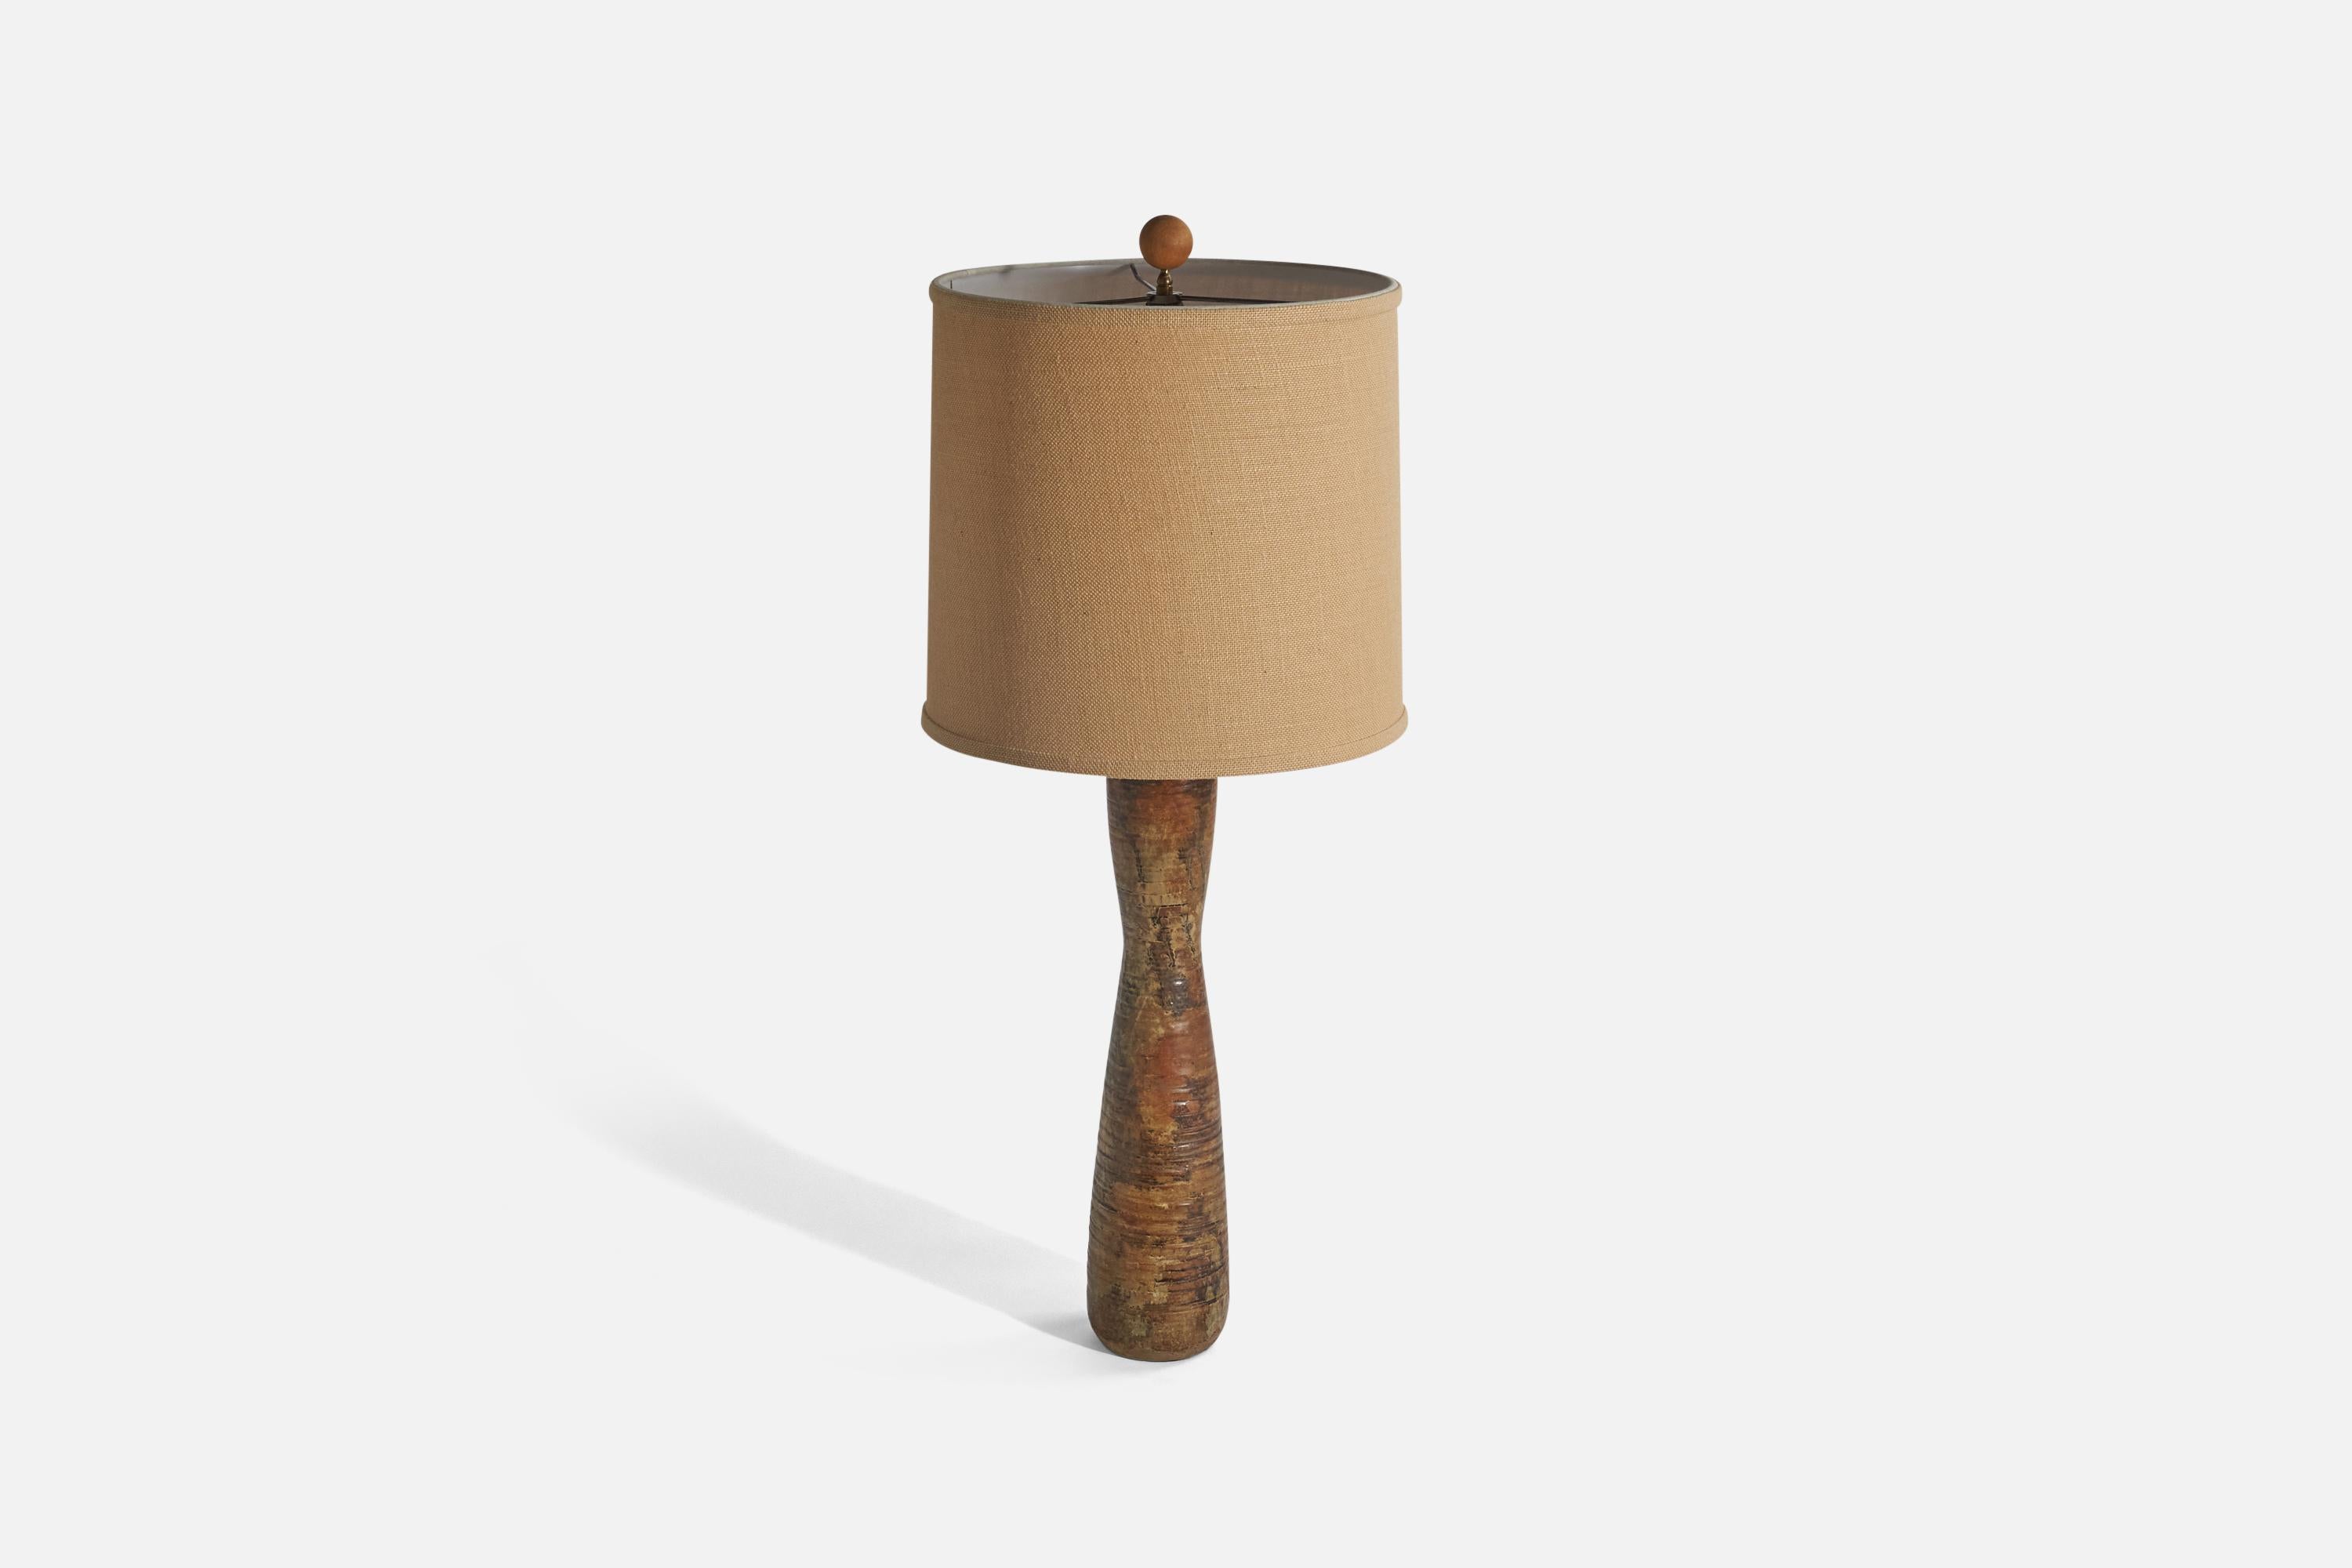 Tischlampe aus braun glasierter Keramik, Holz und hellbraunem Stoff, entworfen und hergestellt in den Vereinigten Staaten, ca. 1950er Jahre. 

Verkauft mit Lampenschirm(en). 
Die angegebenen Abmessungen beziehen sich auf die Lampe mit Schirm(en).